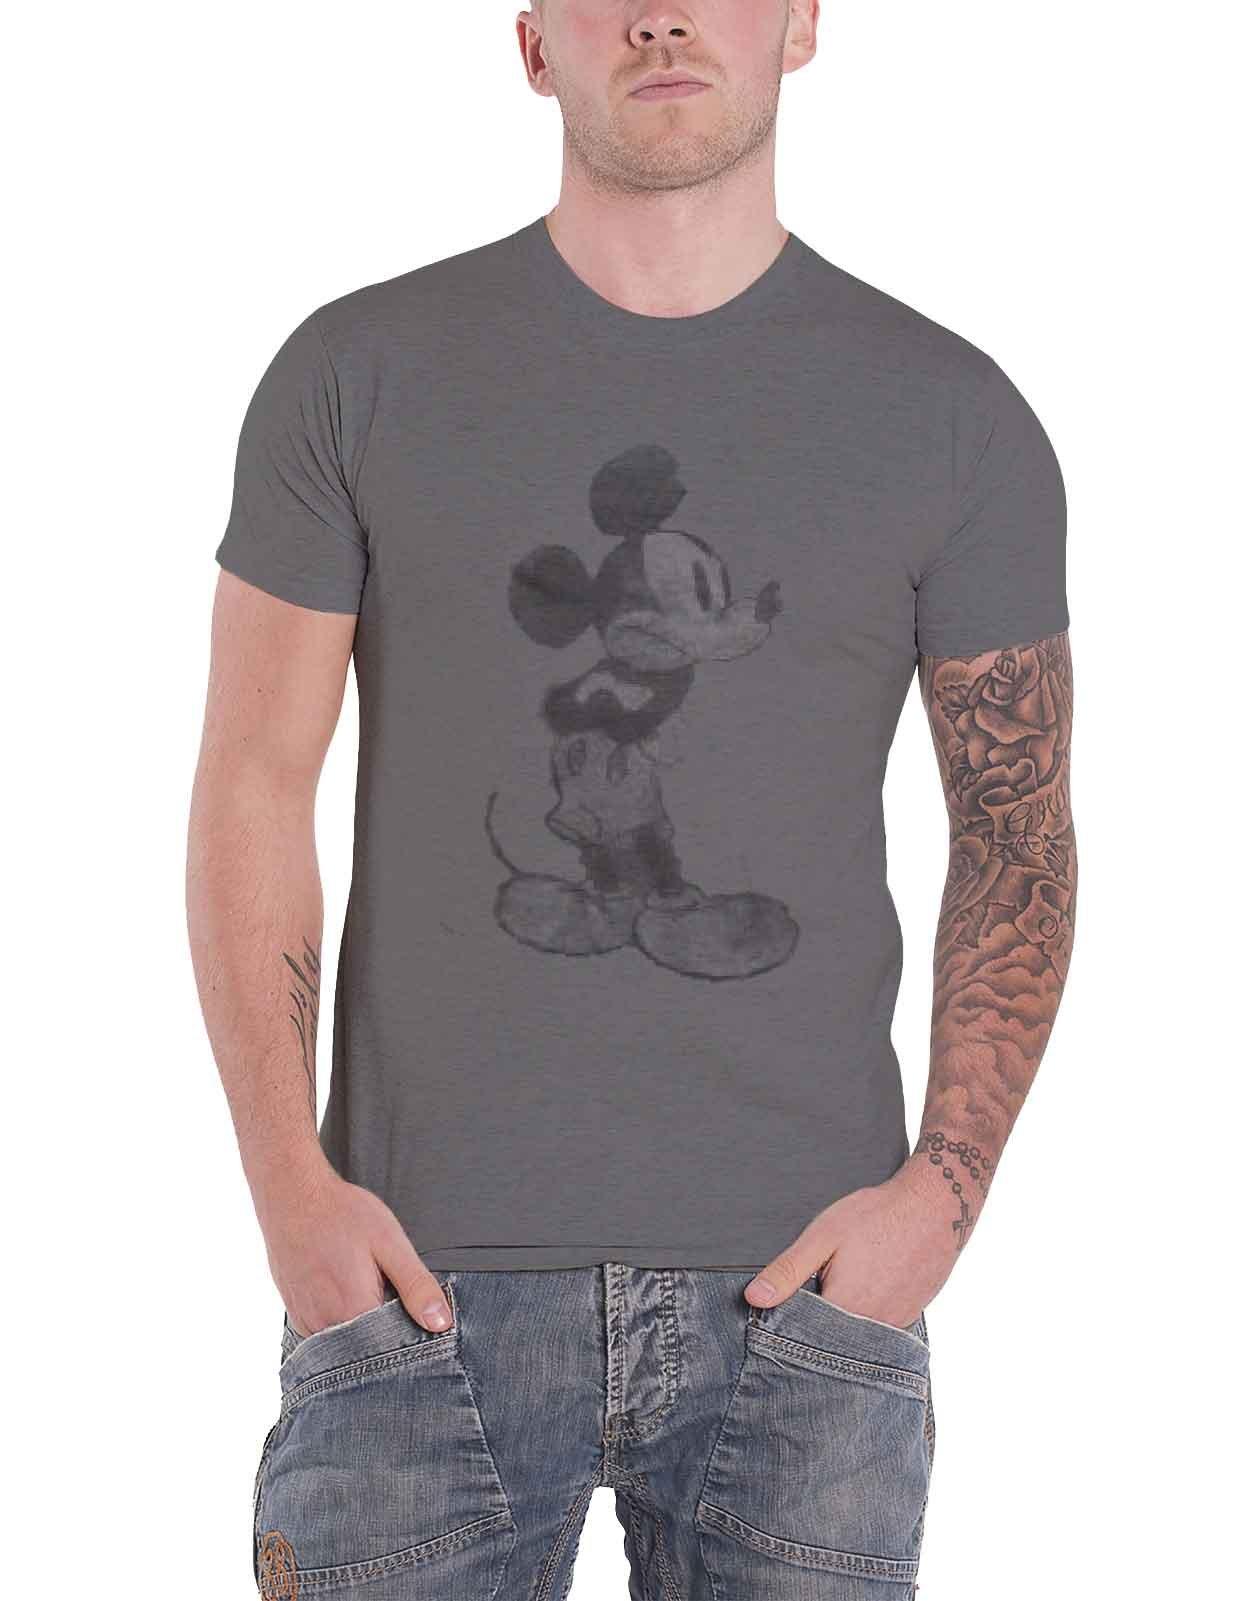 Винтажная футболка с изображением Микки Мауса Disney, серый футболка с надписью я спросил с предложением помолвки с микки маусом от disney licensed character